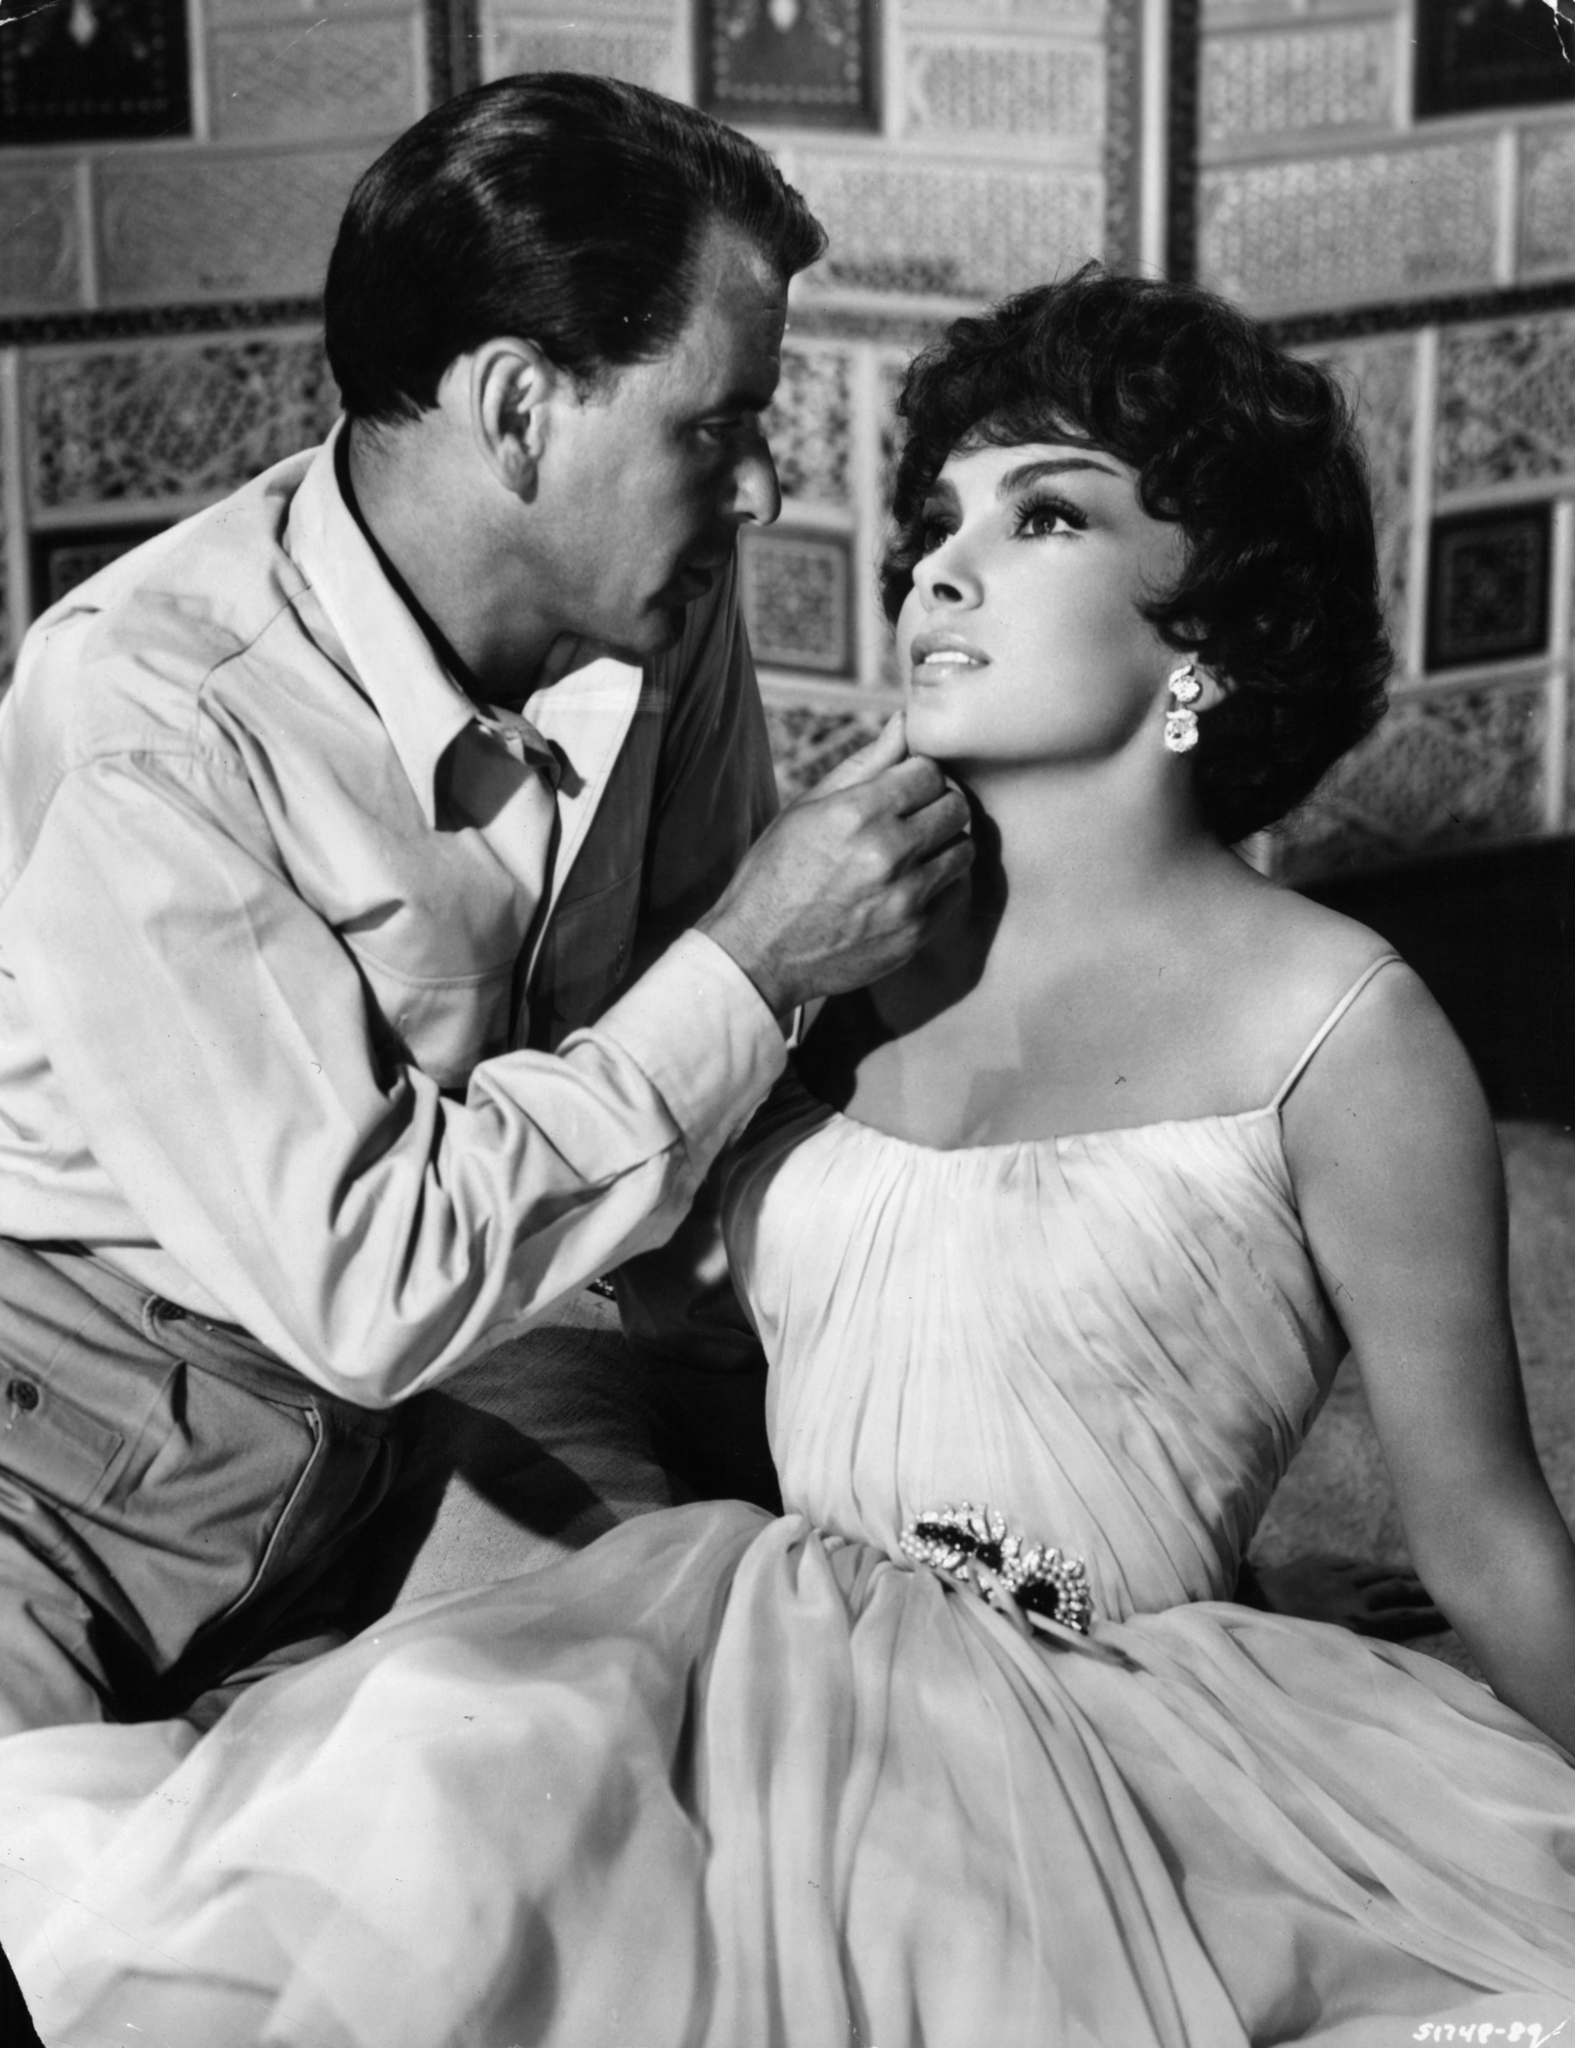 Frank Sinatra and Gina Lollobrigida at event of Never So Few (1959)